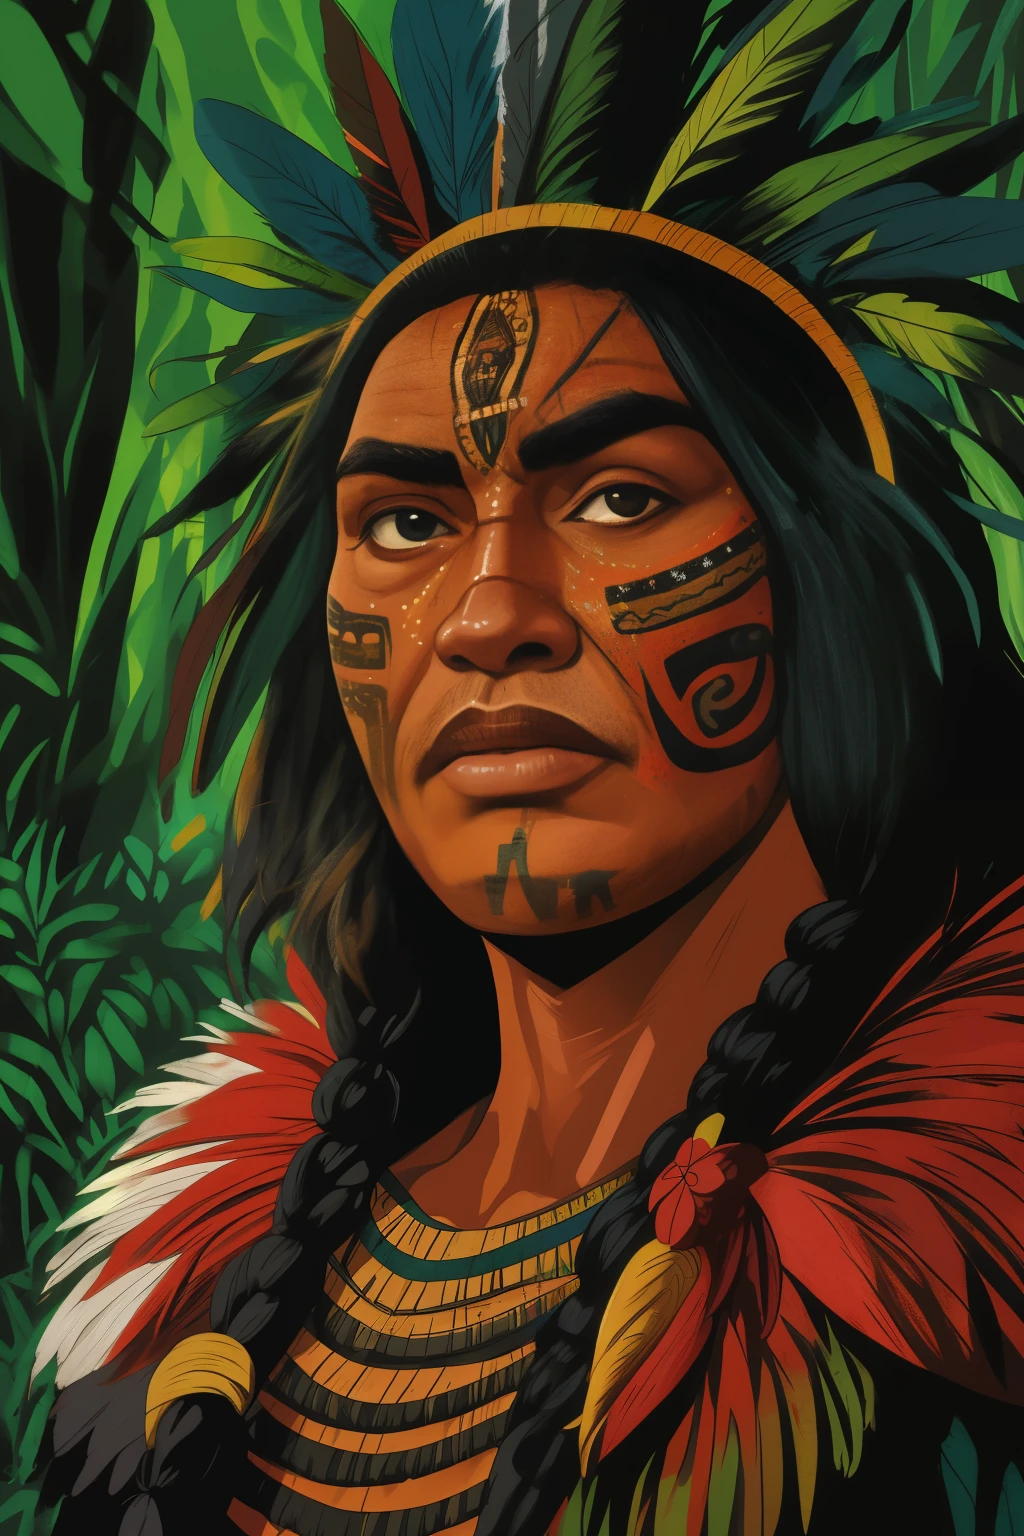 羽飾りとフェイスペイントをした男性の接写, homem 先住民族, povos 先住民族s amazônicos no brasil, アヤワスカシャーマン, 戦士の肖像, フェイシャルトライバルマーク, 赤い戦士のフェイスペインティング, 先住民族, 部族のフェイスペイント, ウォーペイントの使用, 戦士の肖像 masculino, ウサンド・アルマドゥラ部族, 部族の顔の絵, 人類学的写真, 16k, 高解像度, 詳しい顔, 詳しい顔, 細かい目, 詳細なスーツ, DCスタイル, 超現実的な, + 映画のような写真 + ダイナミックな構成, 信じられないほど詳細な, 鋭さ, 詳細 + 詳細 soberbos + 光のある夜 + 完璧主義 + 受賞歴のあるリアリズム ((柔らかい照明))